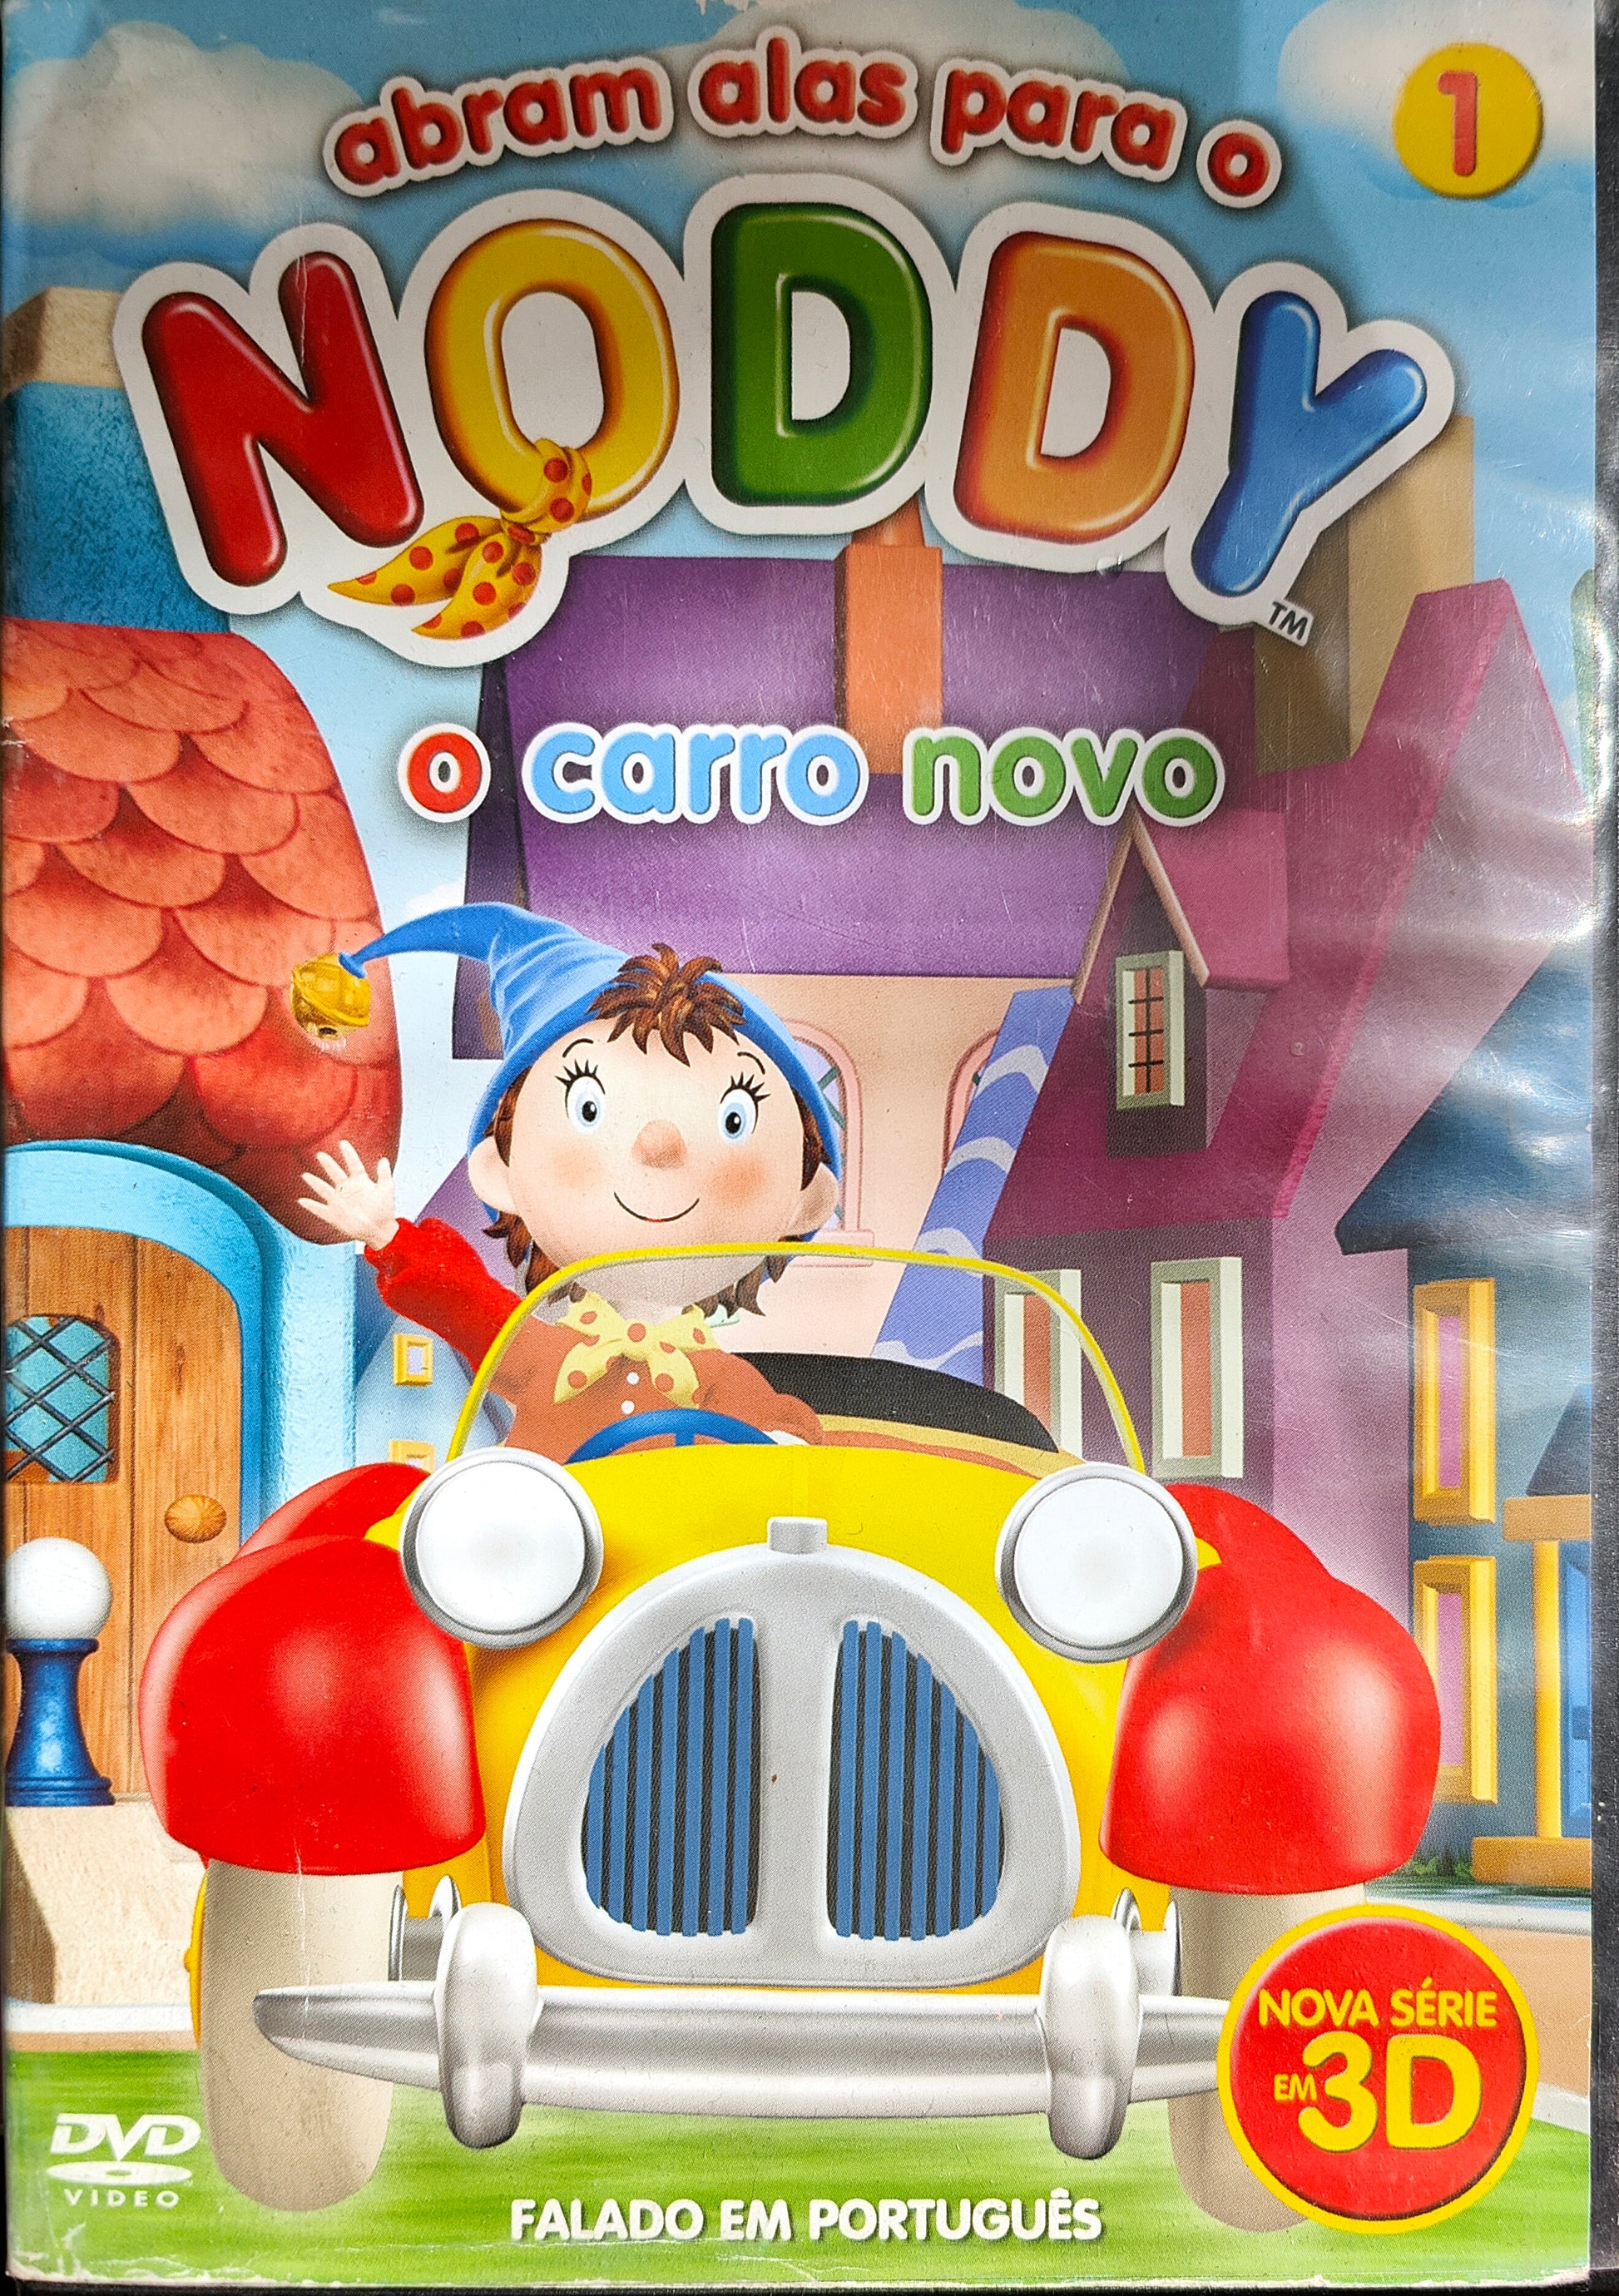 DVD Abram Alas Para O Noddy O Carro Novo - USADO